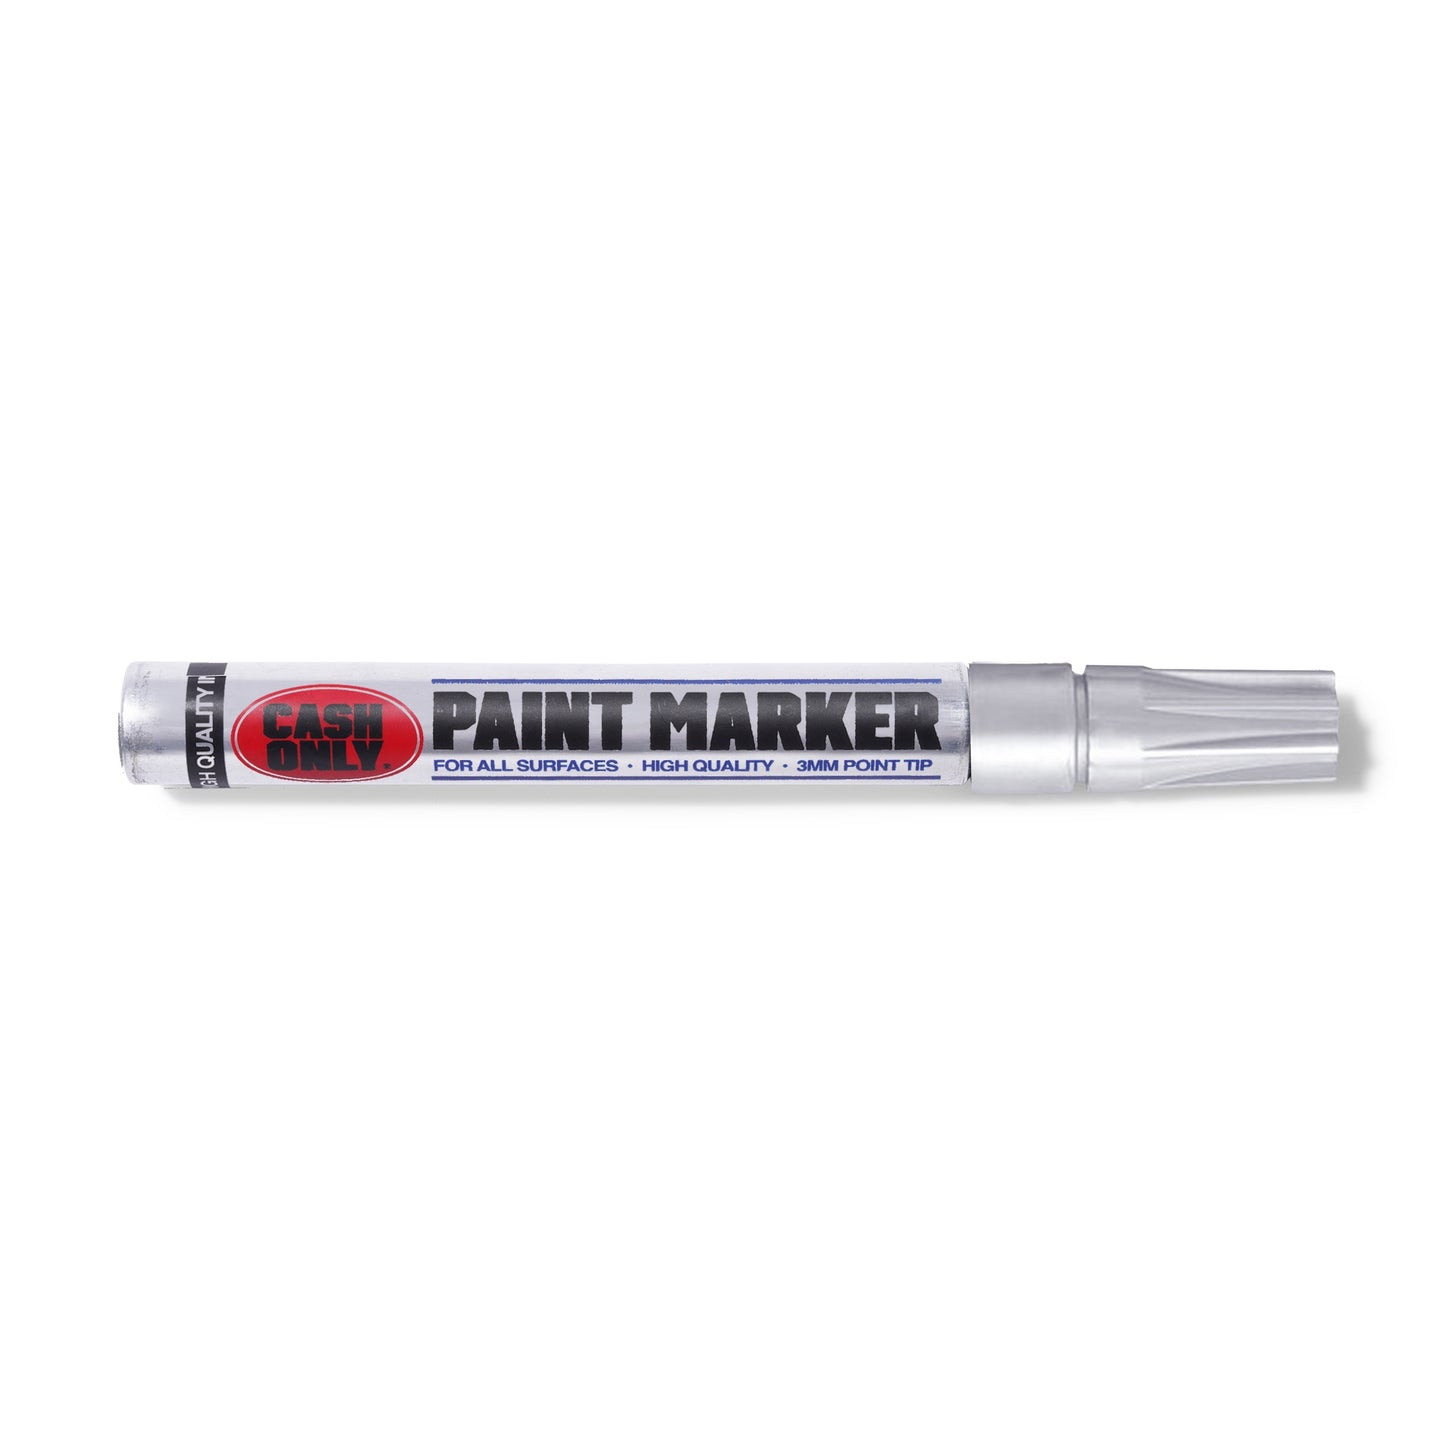 Paint Marker - Chrome